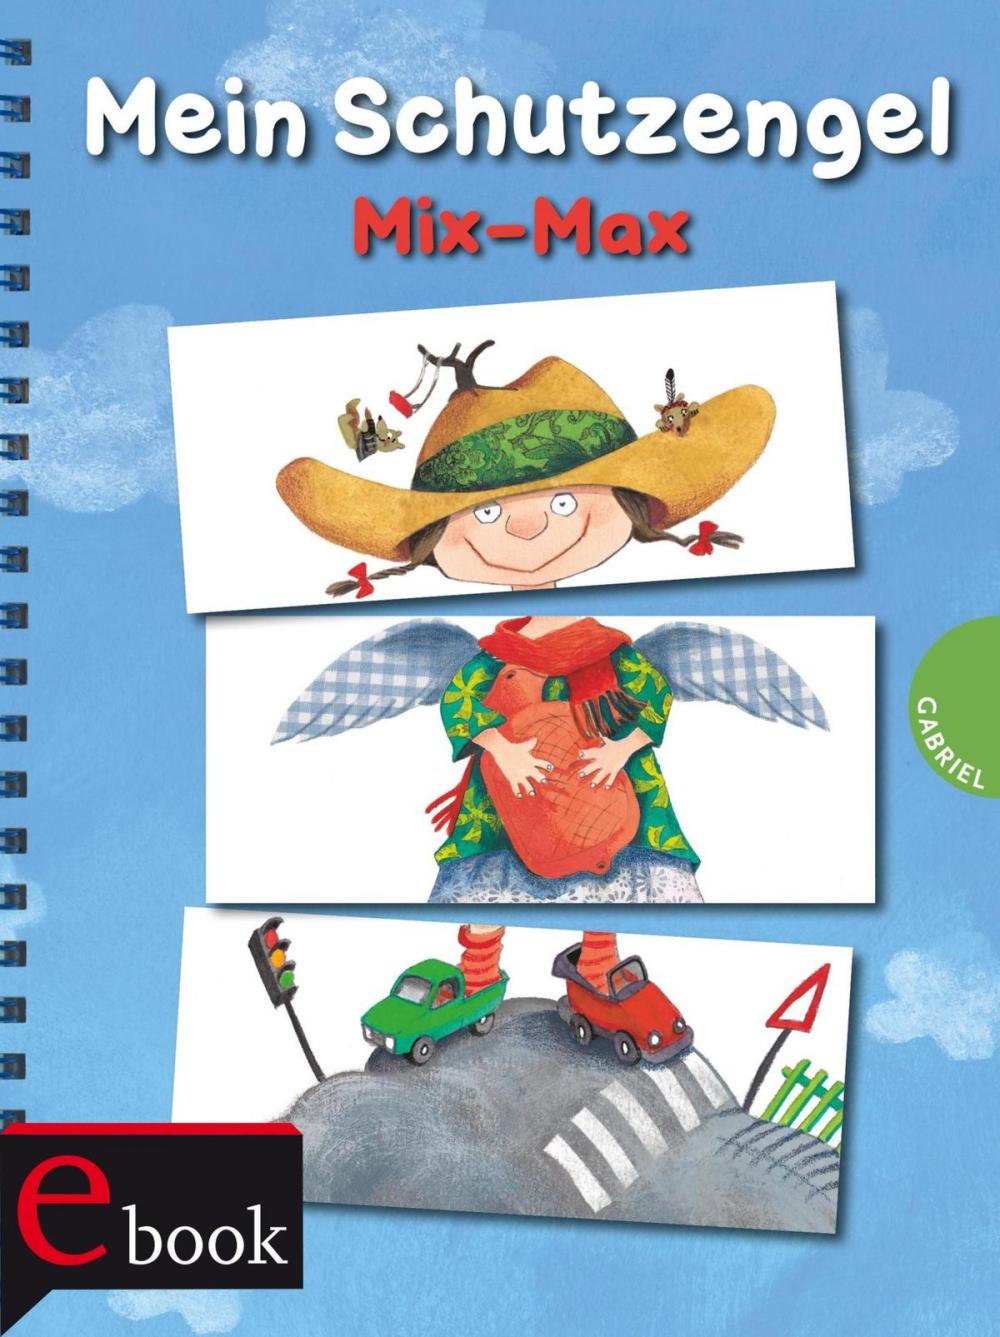 Big bigCover of Mein Schutzengel Mix-Max